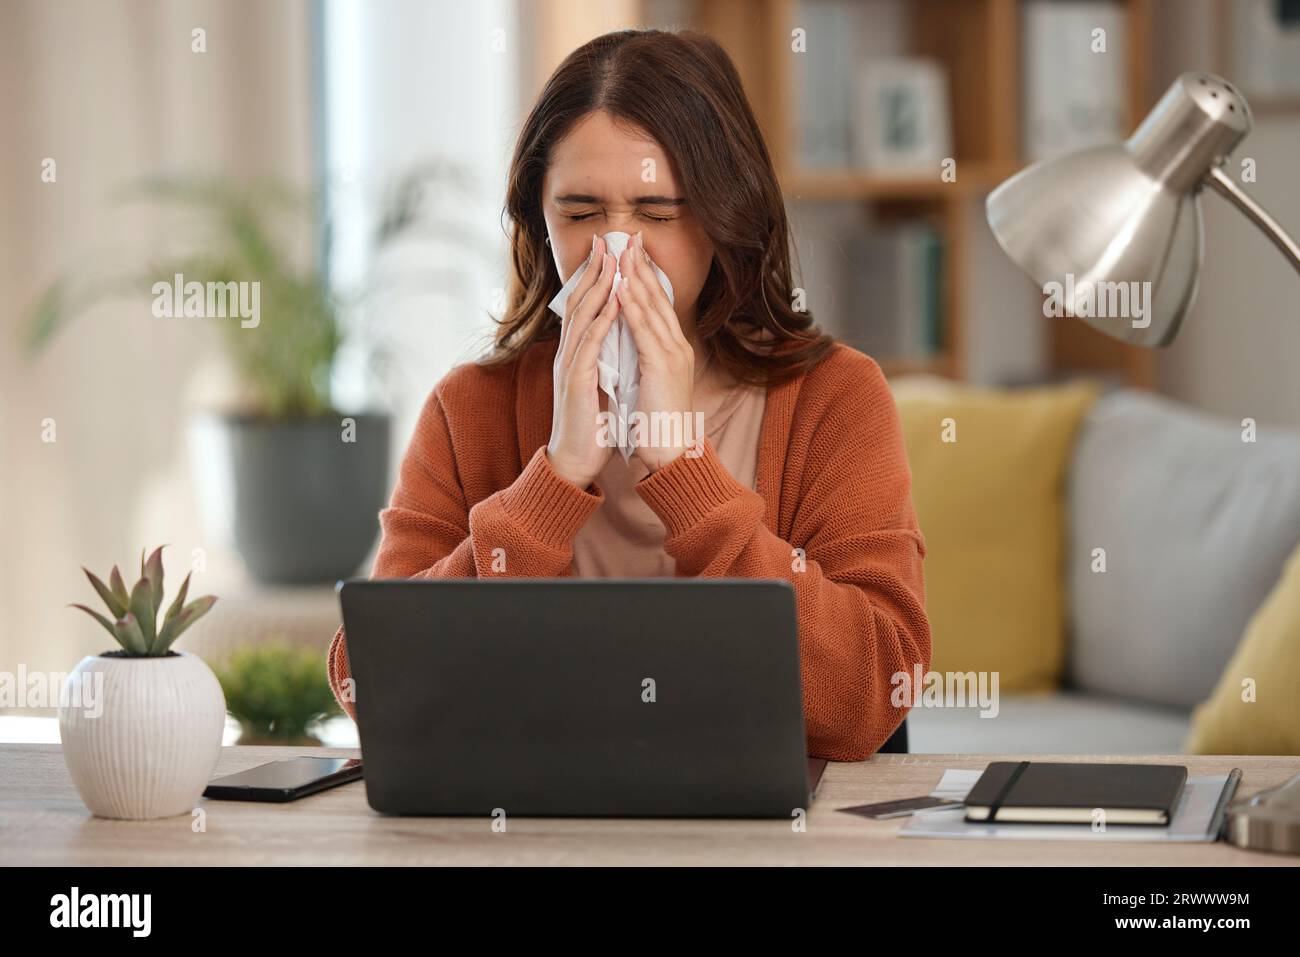 Femme, soufflant le nez et étudiant avec ordinateur portable, allergies ou burn-out avec virus, fatigue et malades avec infection des sinus. Papier toilette, santé défaillante et Banque D'Images